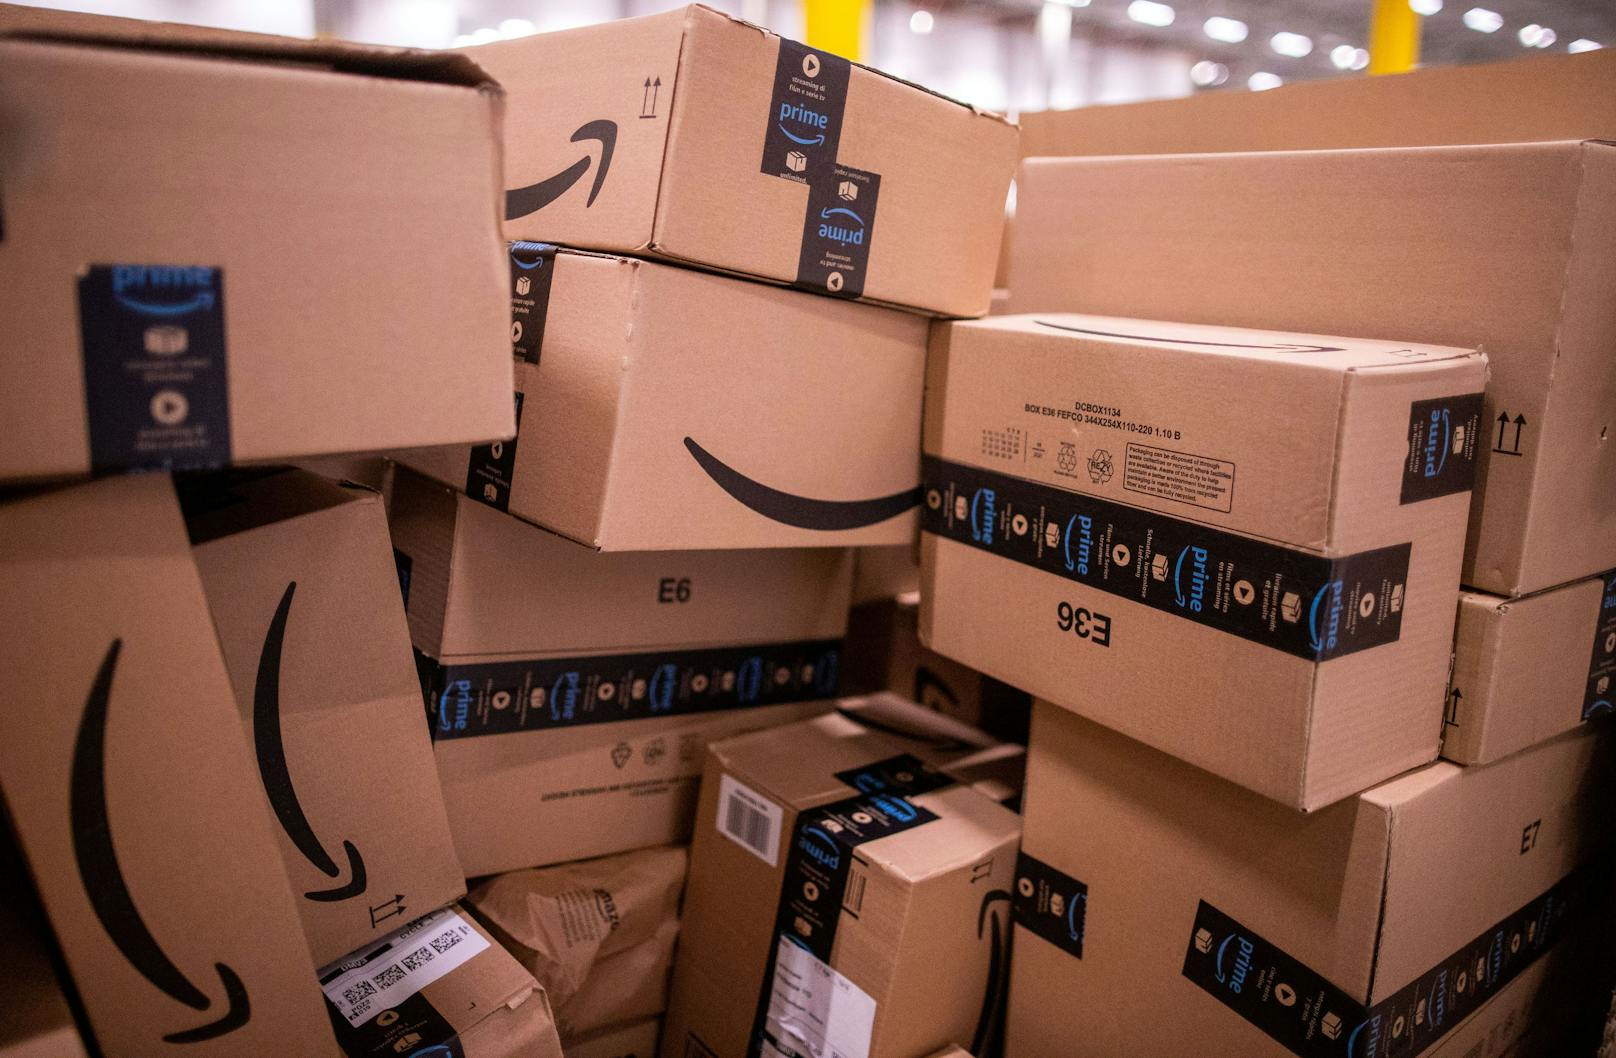 Dutzende aufgerissene Amazon-Pakete in Tirol entdeckt